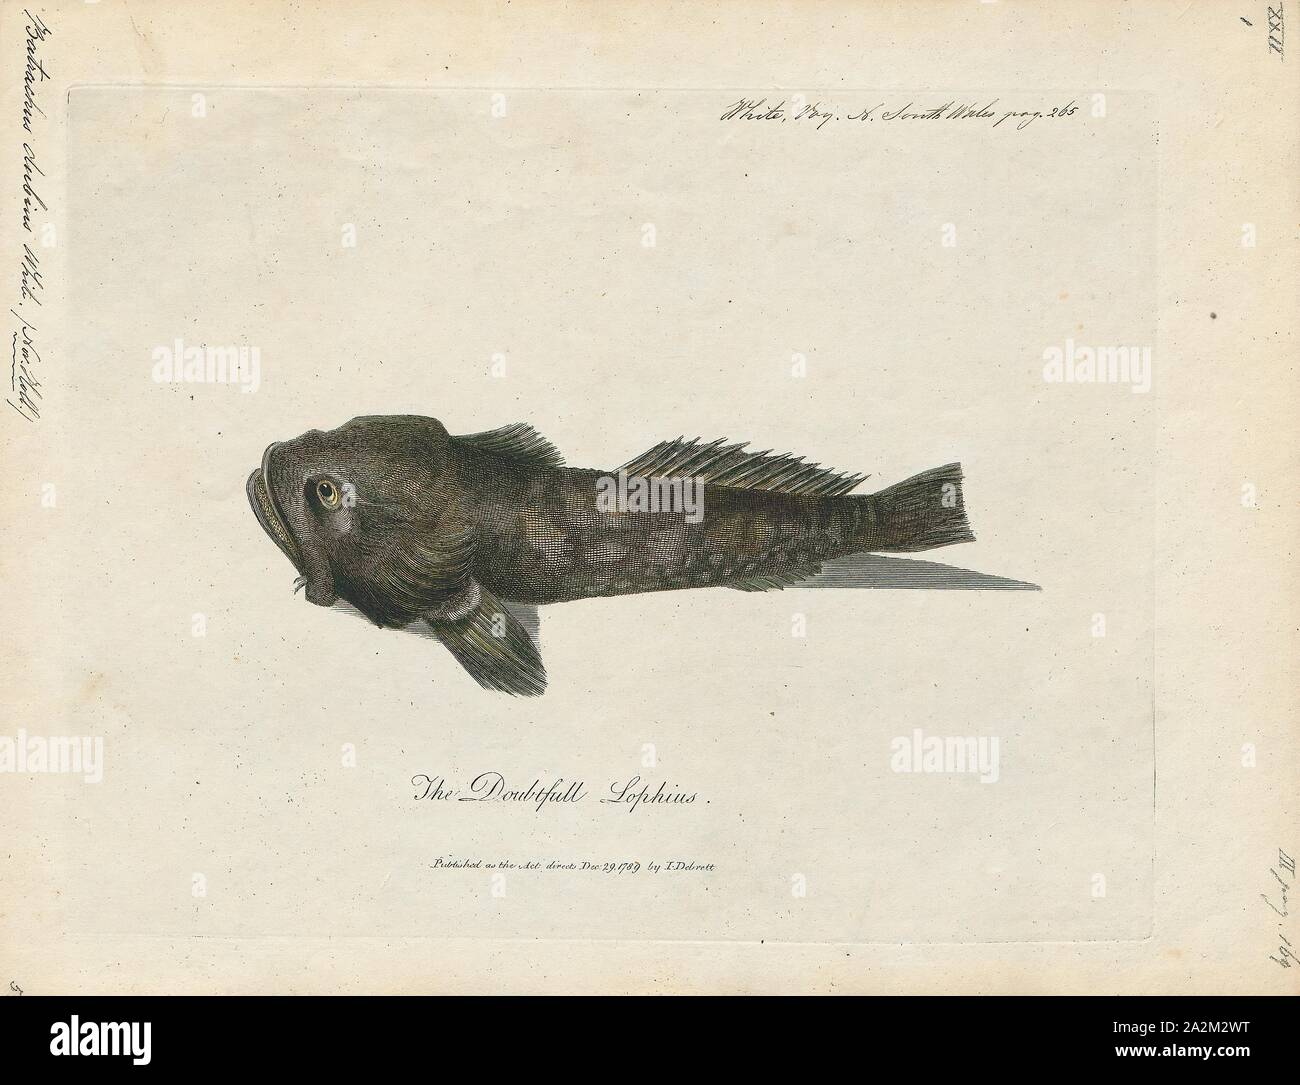 Batrachus dubius, Print, 1700-1880 Stock Photo